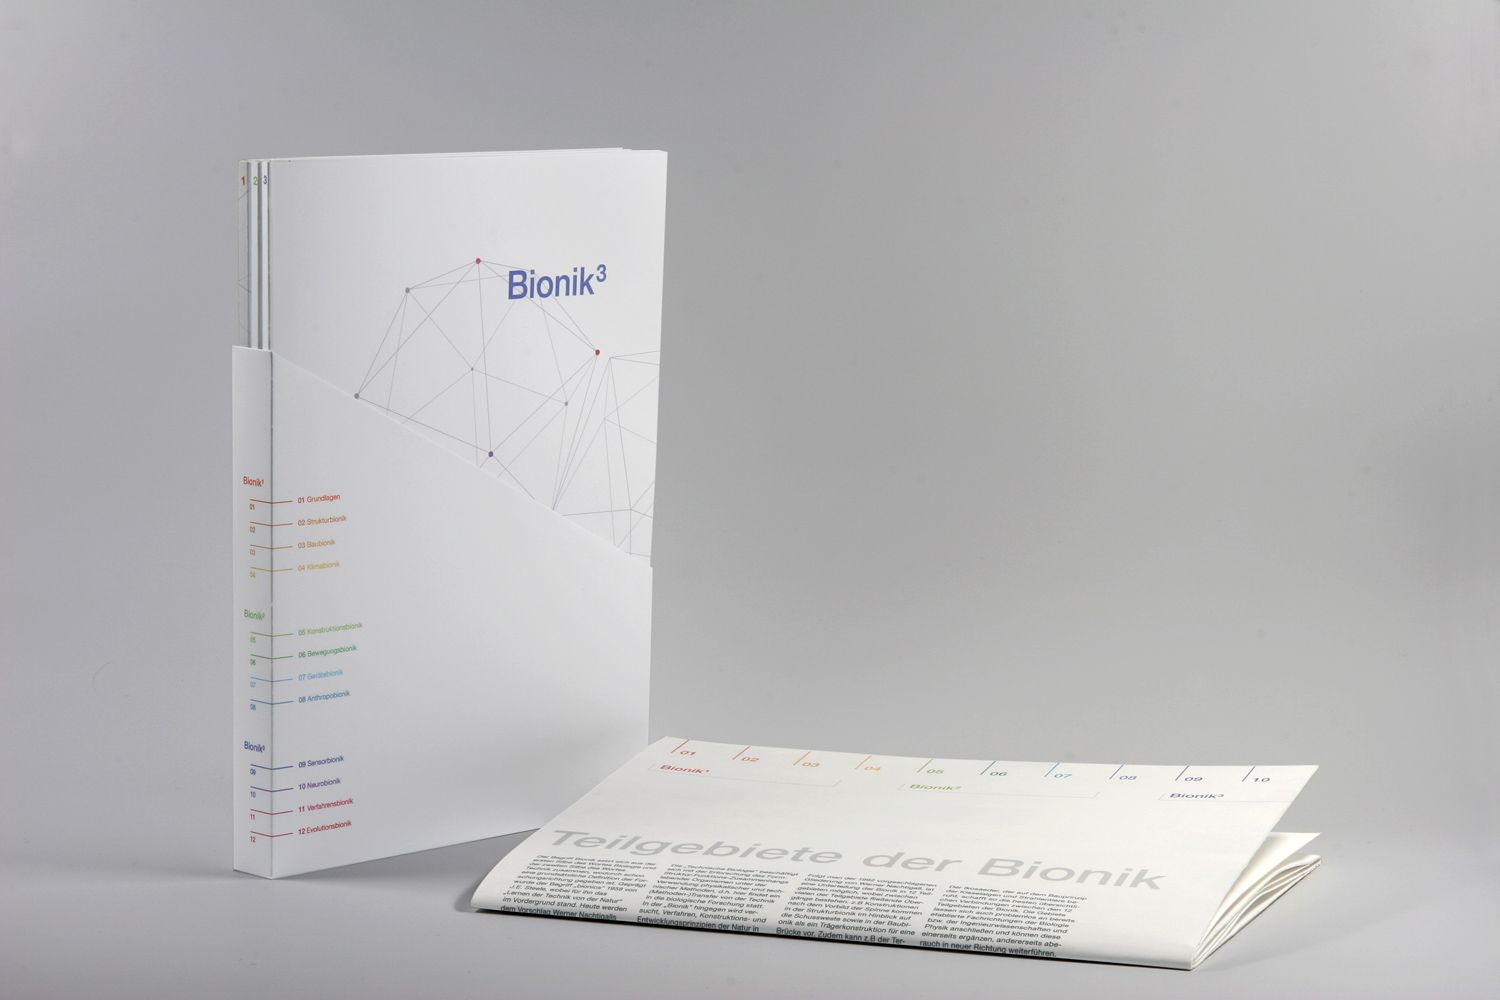 Lernmaterial-Paket: Schuber mit 3 Heften und einem Plakat über Bionik.